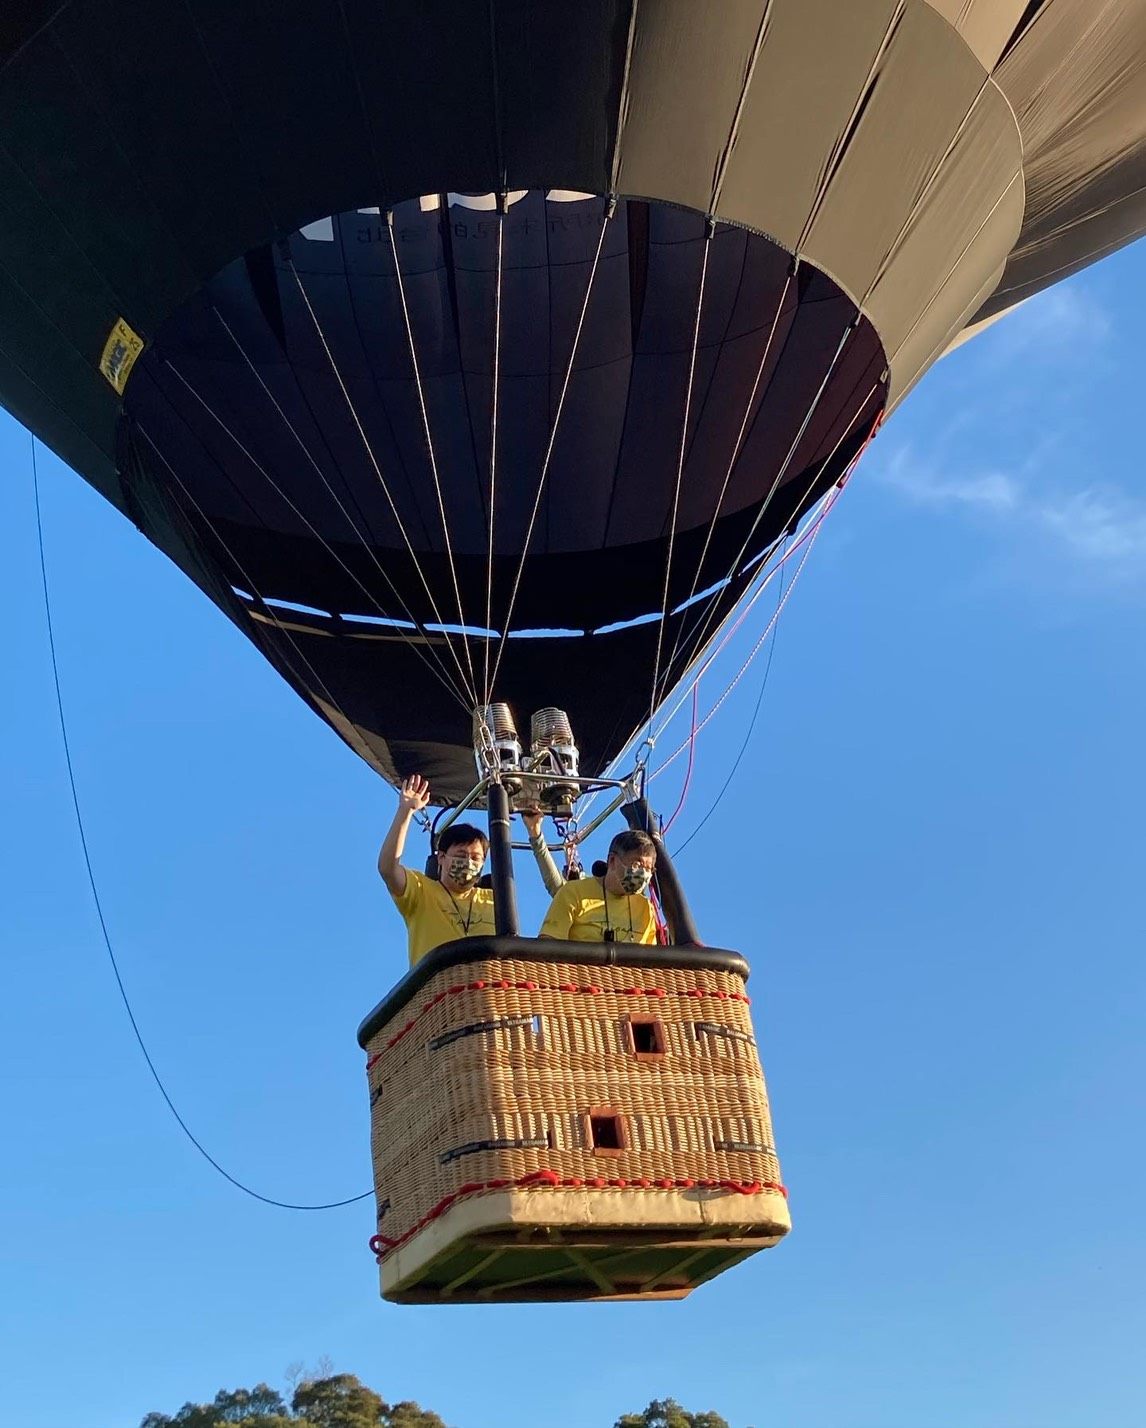 臺北市長柯文哲帶領觀光傳播局長劉奕霆率先搭乘超萌的熊讚3D造型熱氣球飛向天空